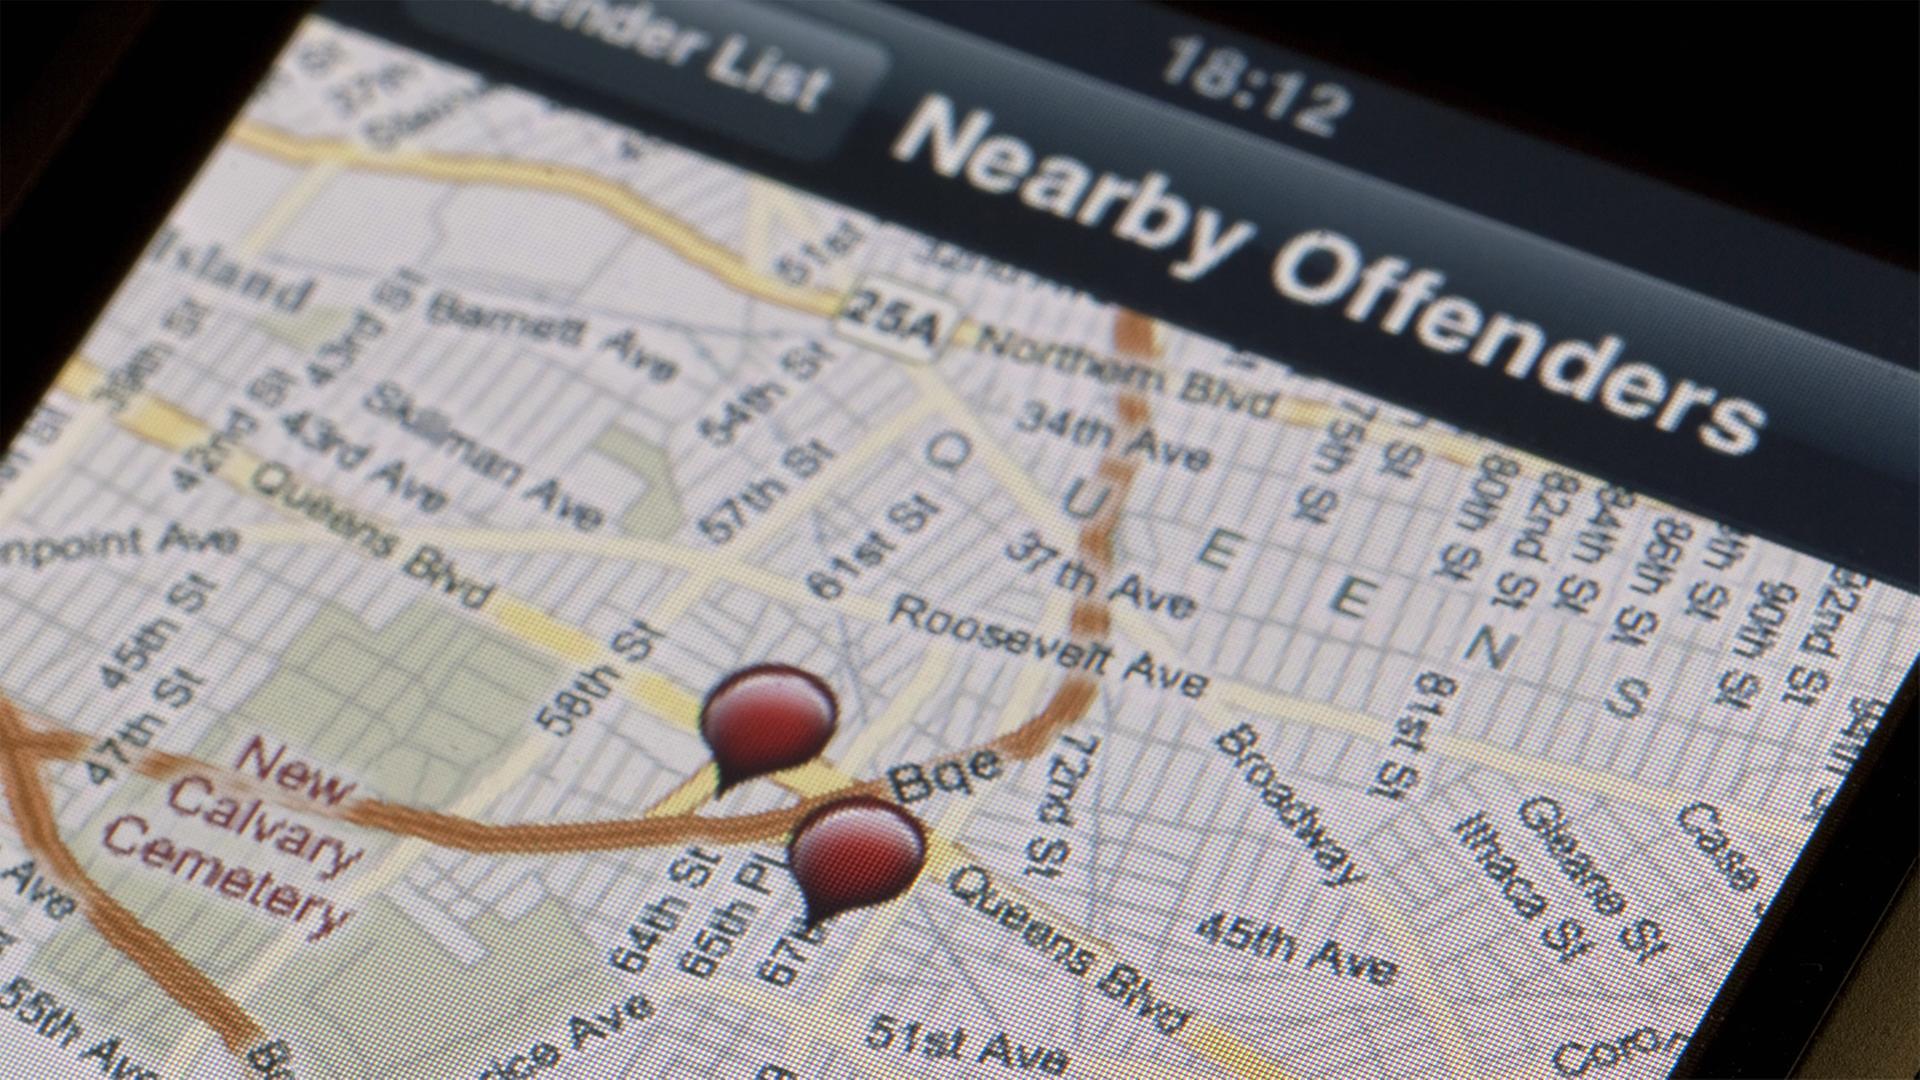 Ein kleines Programm für das Apple iPhone namens "Offender Locator" zeigt - in den USA - die Adresse und teils auch Fotos und weitere persönliche Angaben von in der Nähe lebenden verurteilten Sexualstraftäter auf einer Karte an.